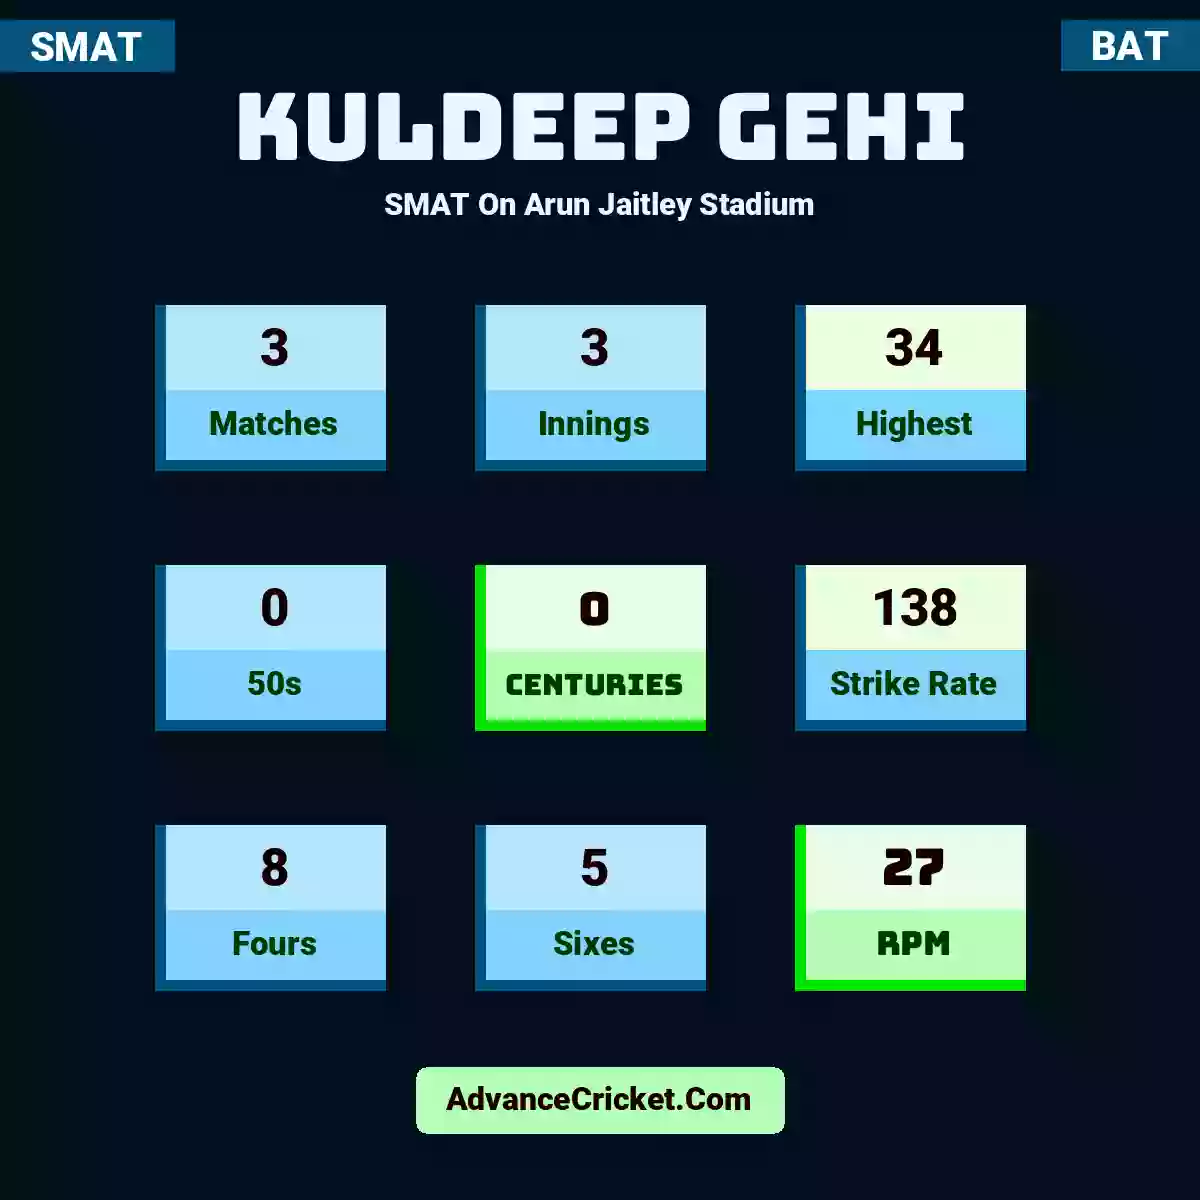 Kuldeep Gehi SMAT  On Arun Jaitley Stadium, Kuldeep Gehi played 3 matches, scored 34 runs as highest, 0 half-centuries, and 0 centuries, with a strike rate of 138. K.Gehi hit 8 fours and 5 sixes, with an RPM of 27.